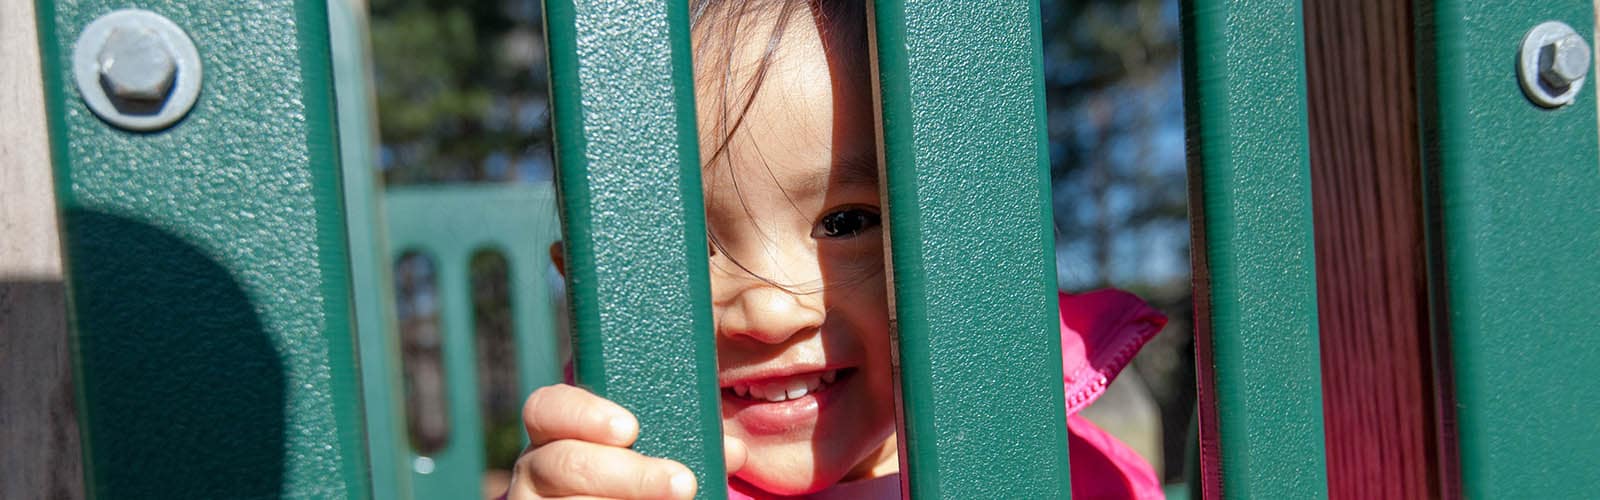 Una niña mira a través de un objeto en el patio de juegos y sonríe.